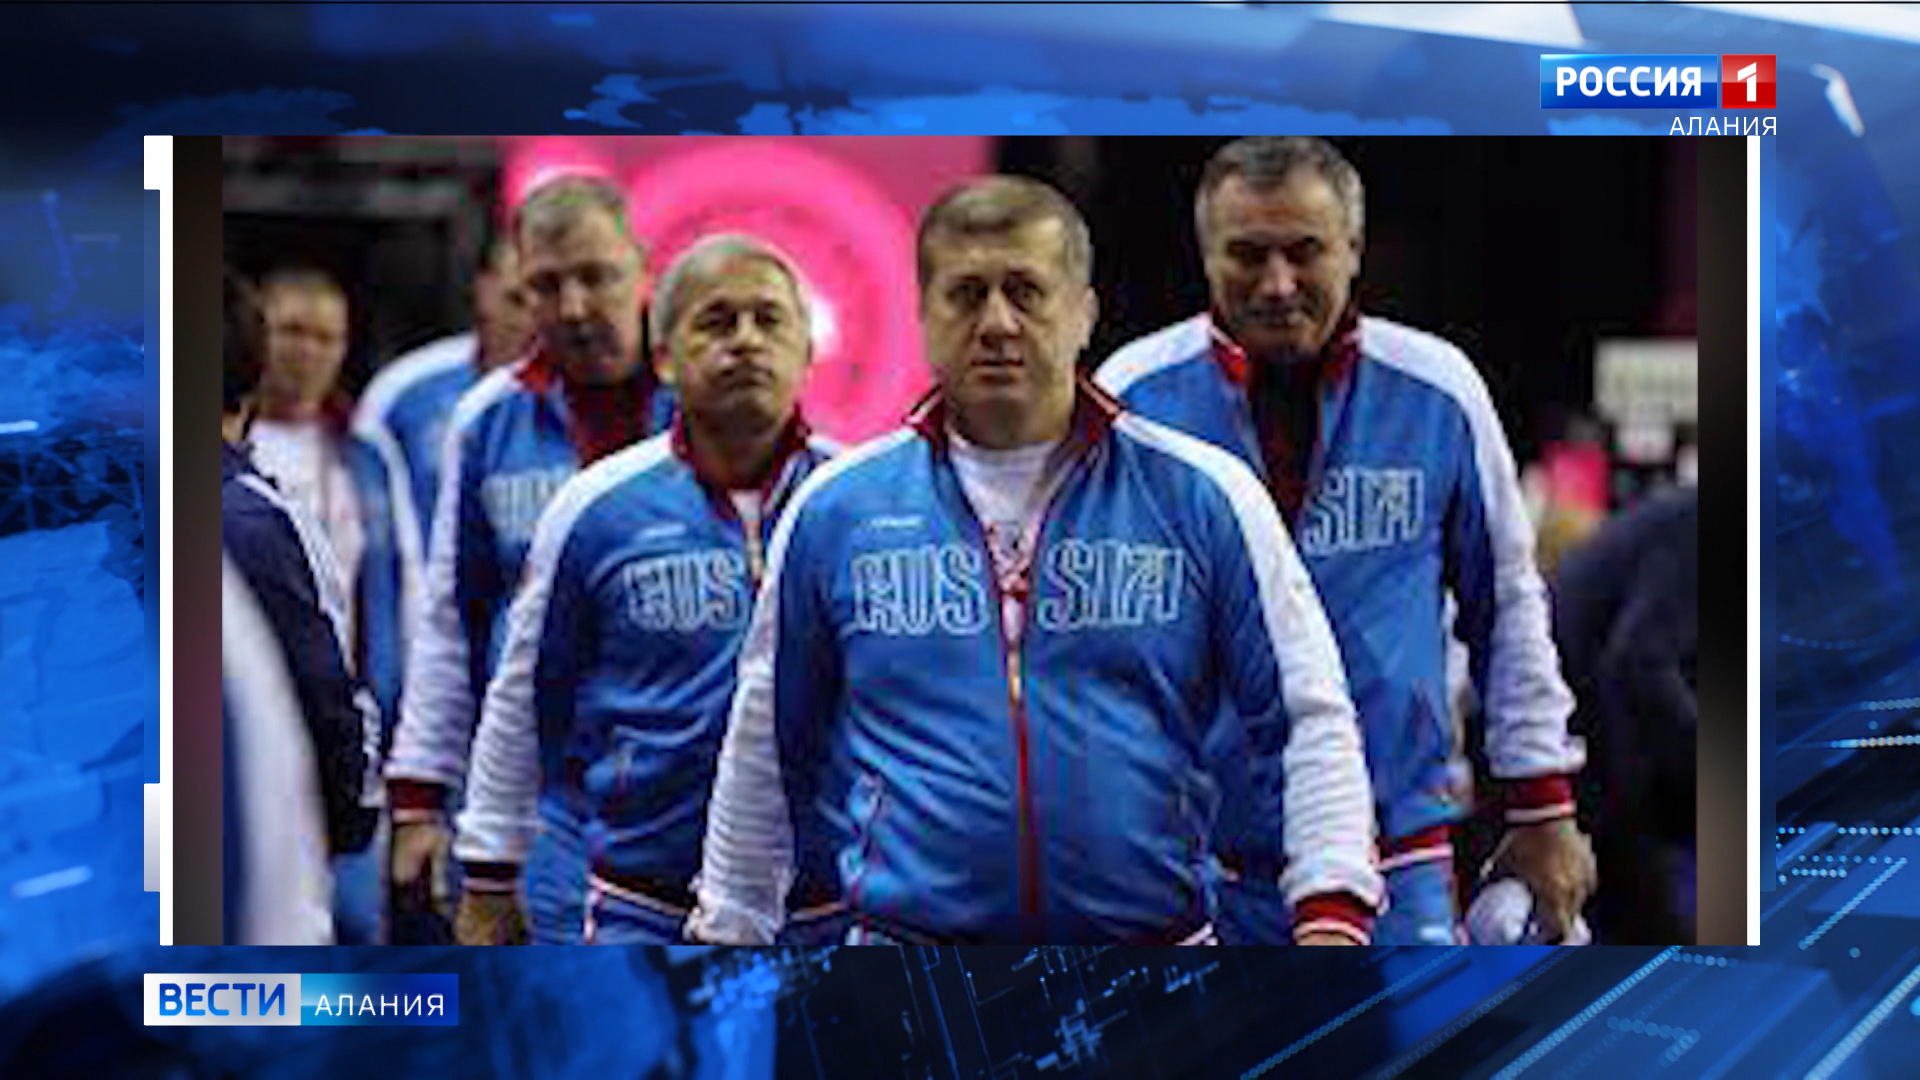 Дзамболат Тедеев: Это первый прецедент в истории российского спорта, когда увольняют тренера, стабильно приводящего сборную к высоким результатам